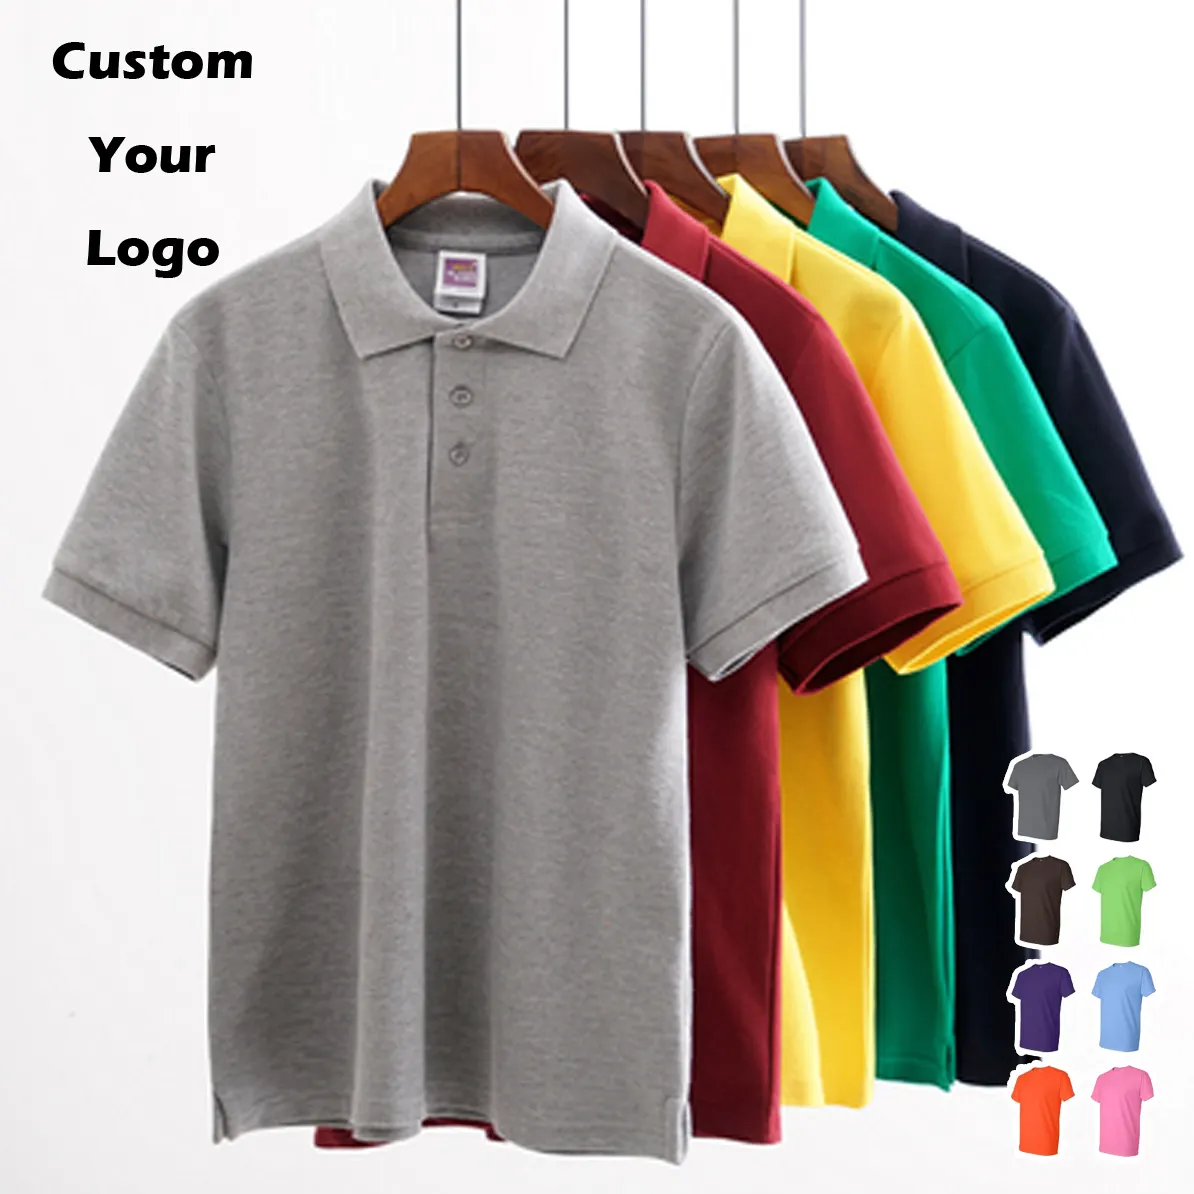 Venta al por mayor 100% algodón camisetas en blanco liso poliéster polos personalizado bordado logotipo impresión Golf Polo camisetas para hombres